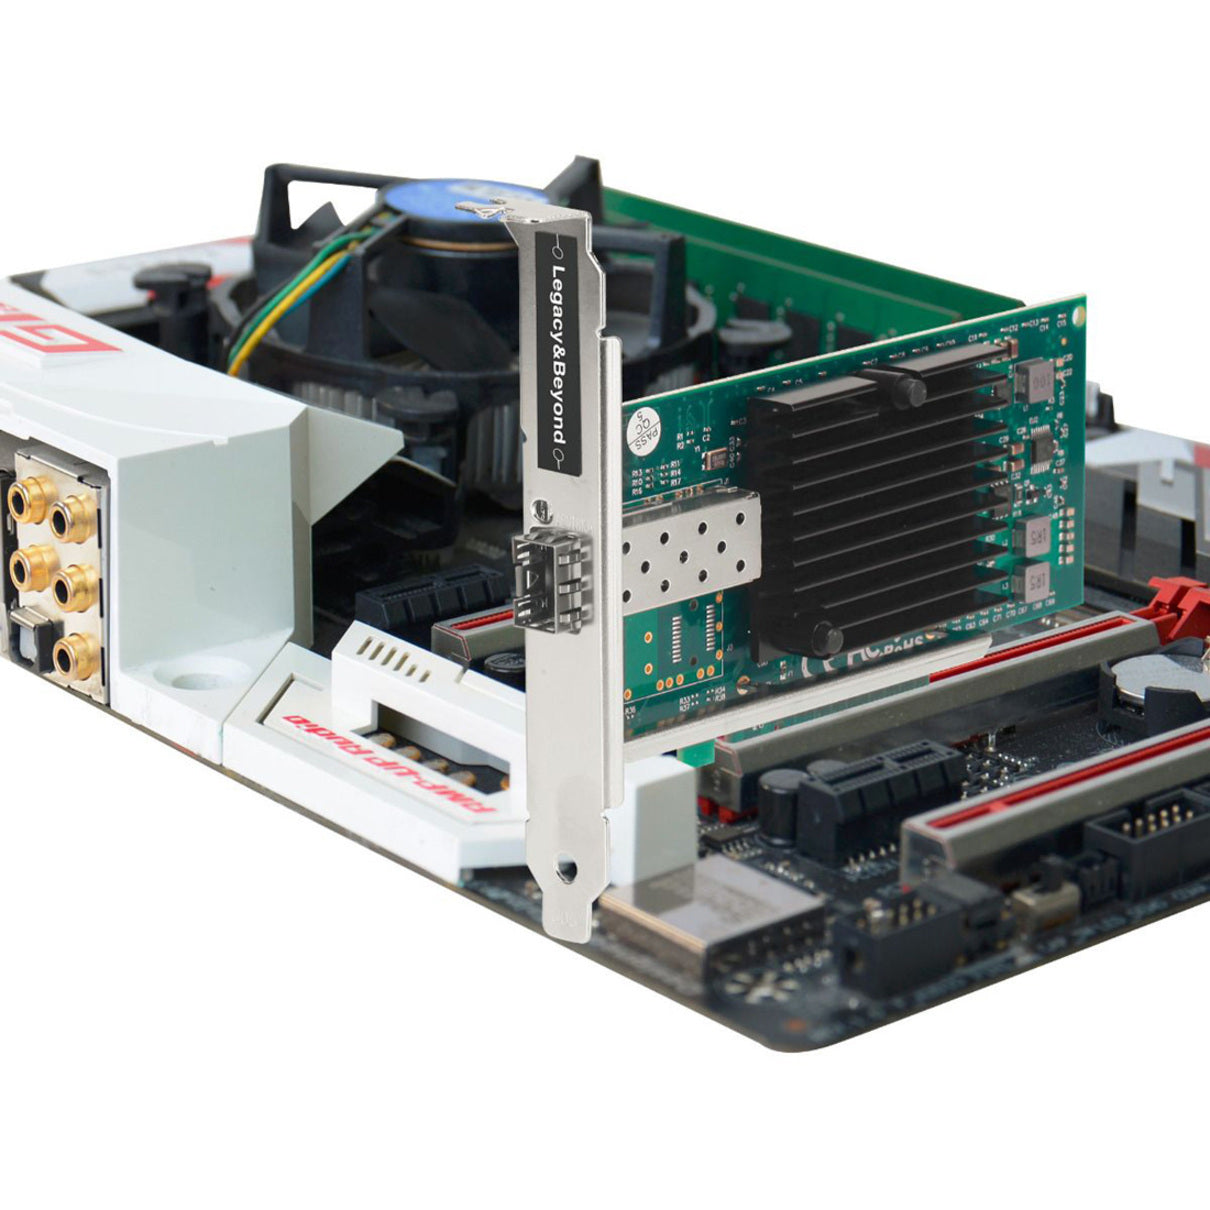 SIIG LB-GE0411-S1 Single Port 10G SFP+ Ethernet Network PCI Express, 10Gigabit Ethernet Card